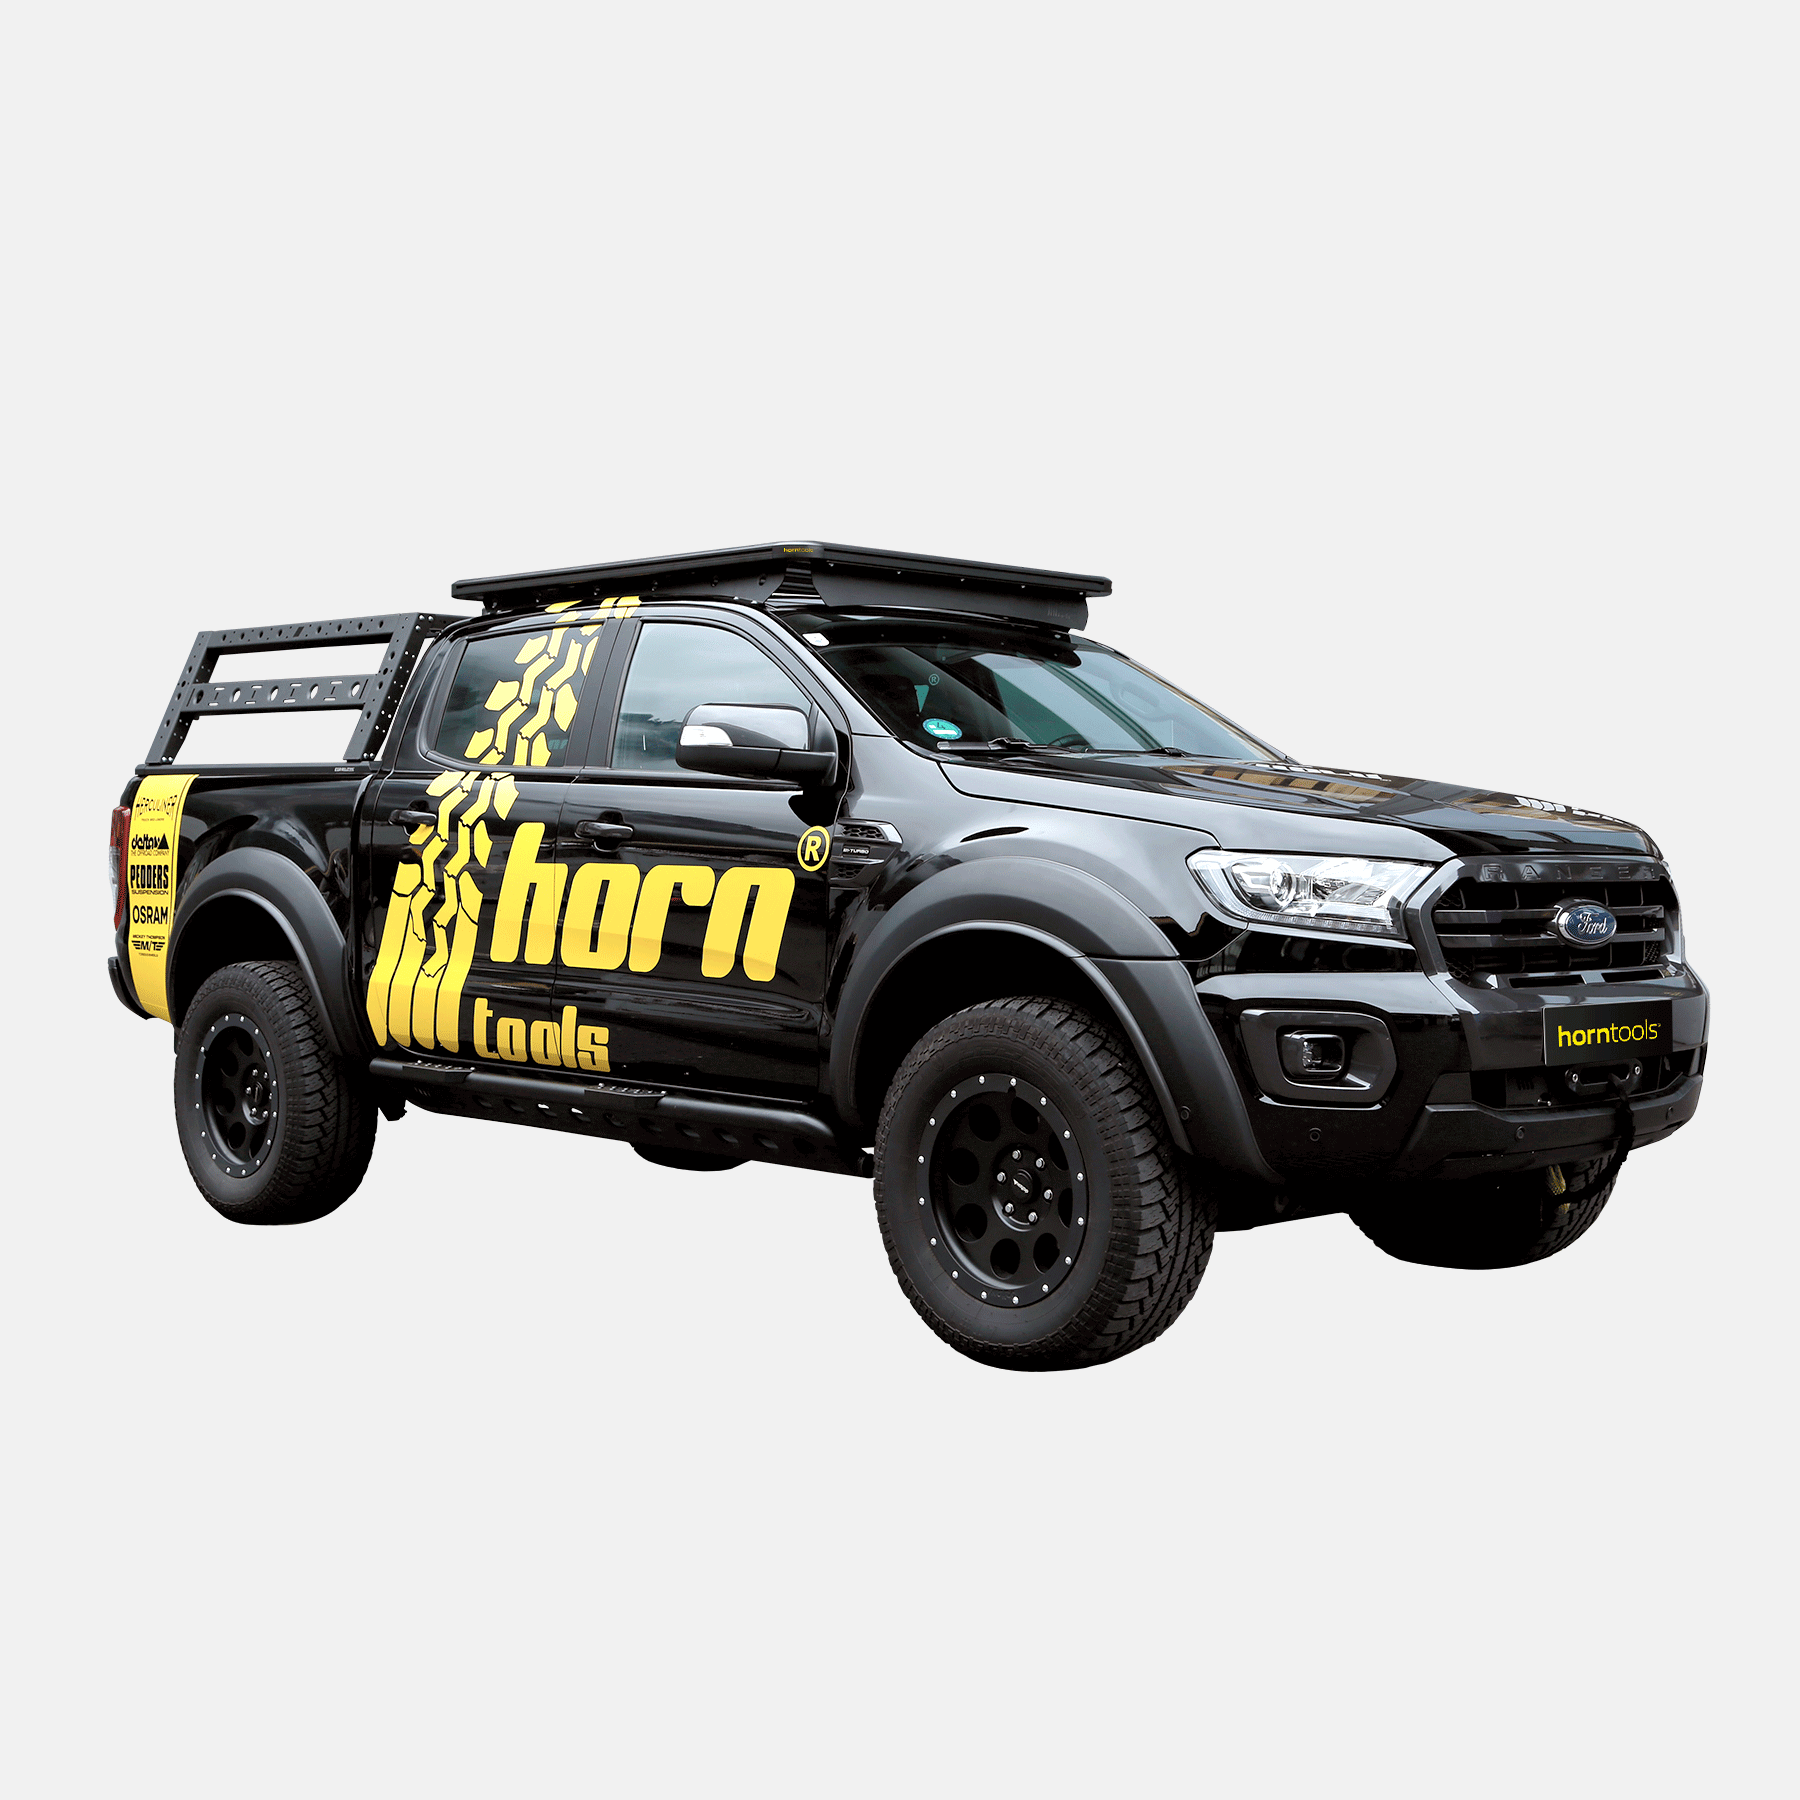 Dachträger ExRoof für Ford Ranger Bj 2016 - 2022 kaufen